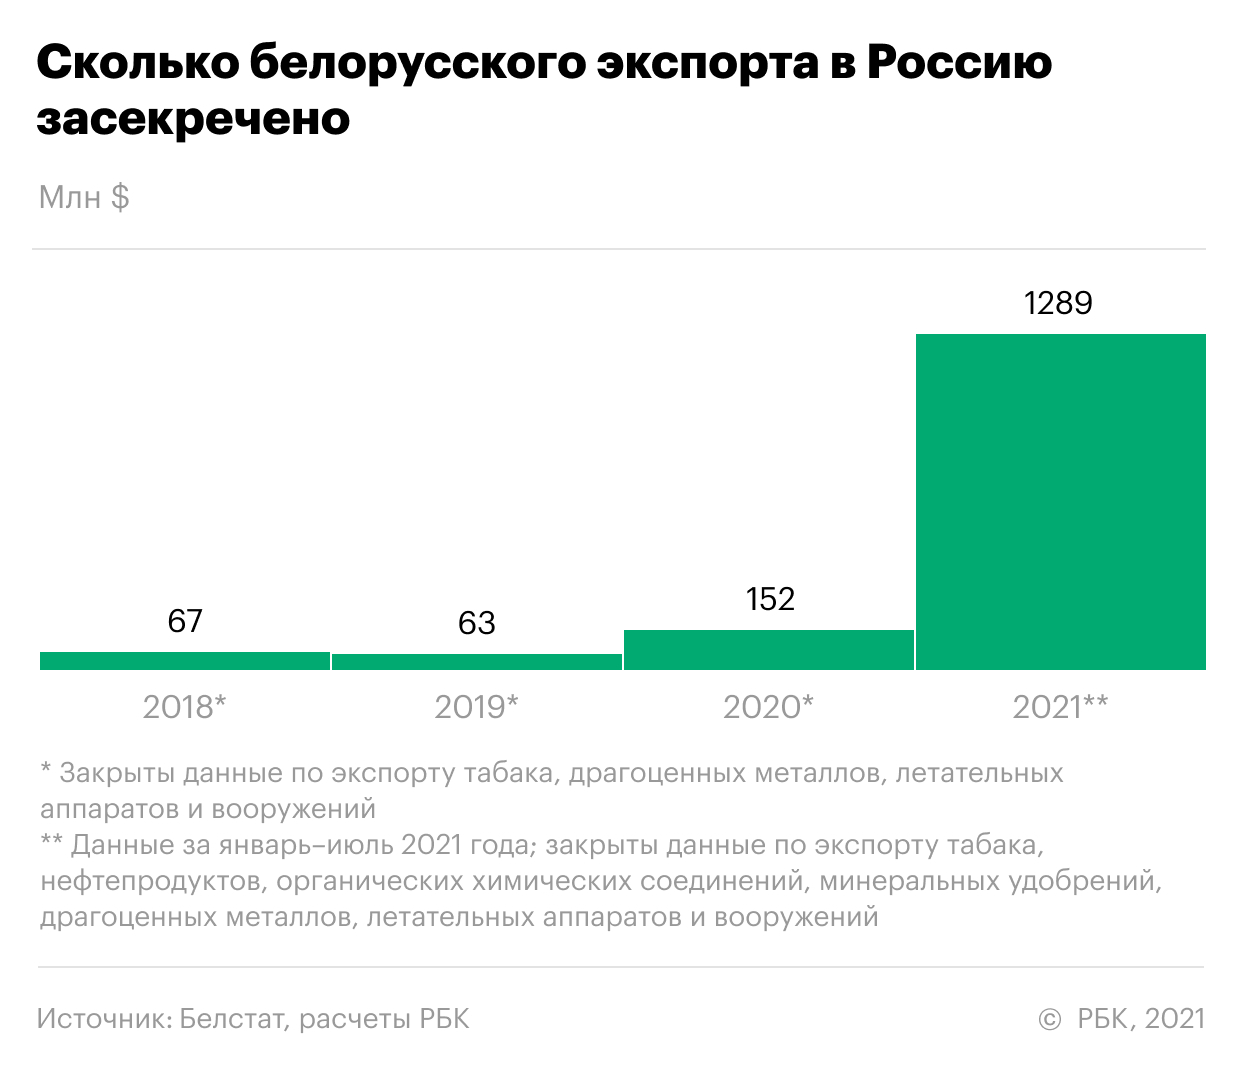 Белоруссия засекретила на $1 млрд экспорта в Россию больше. Инфографика